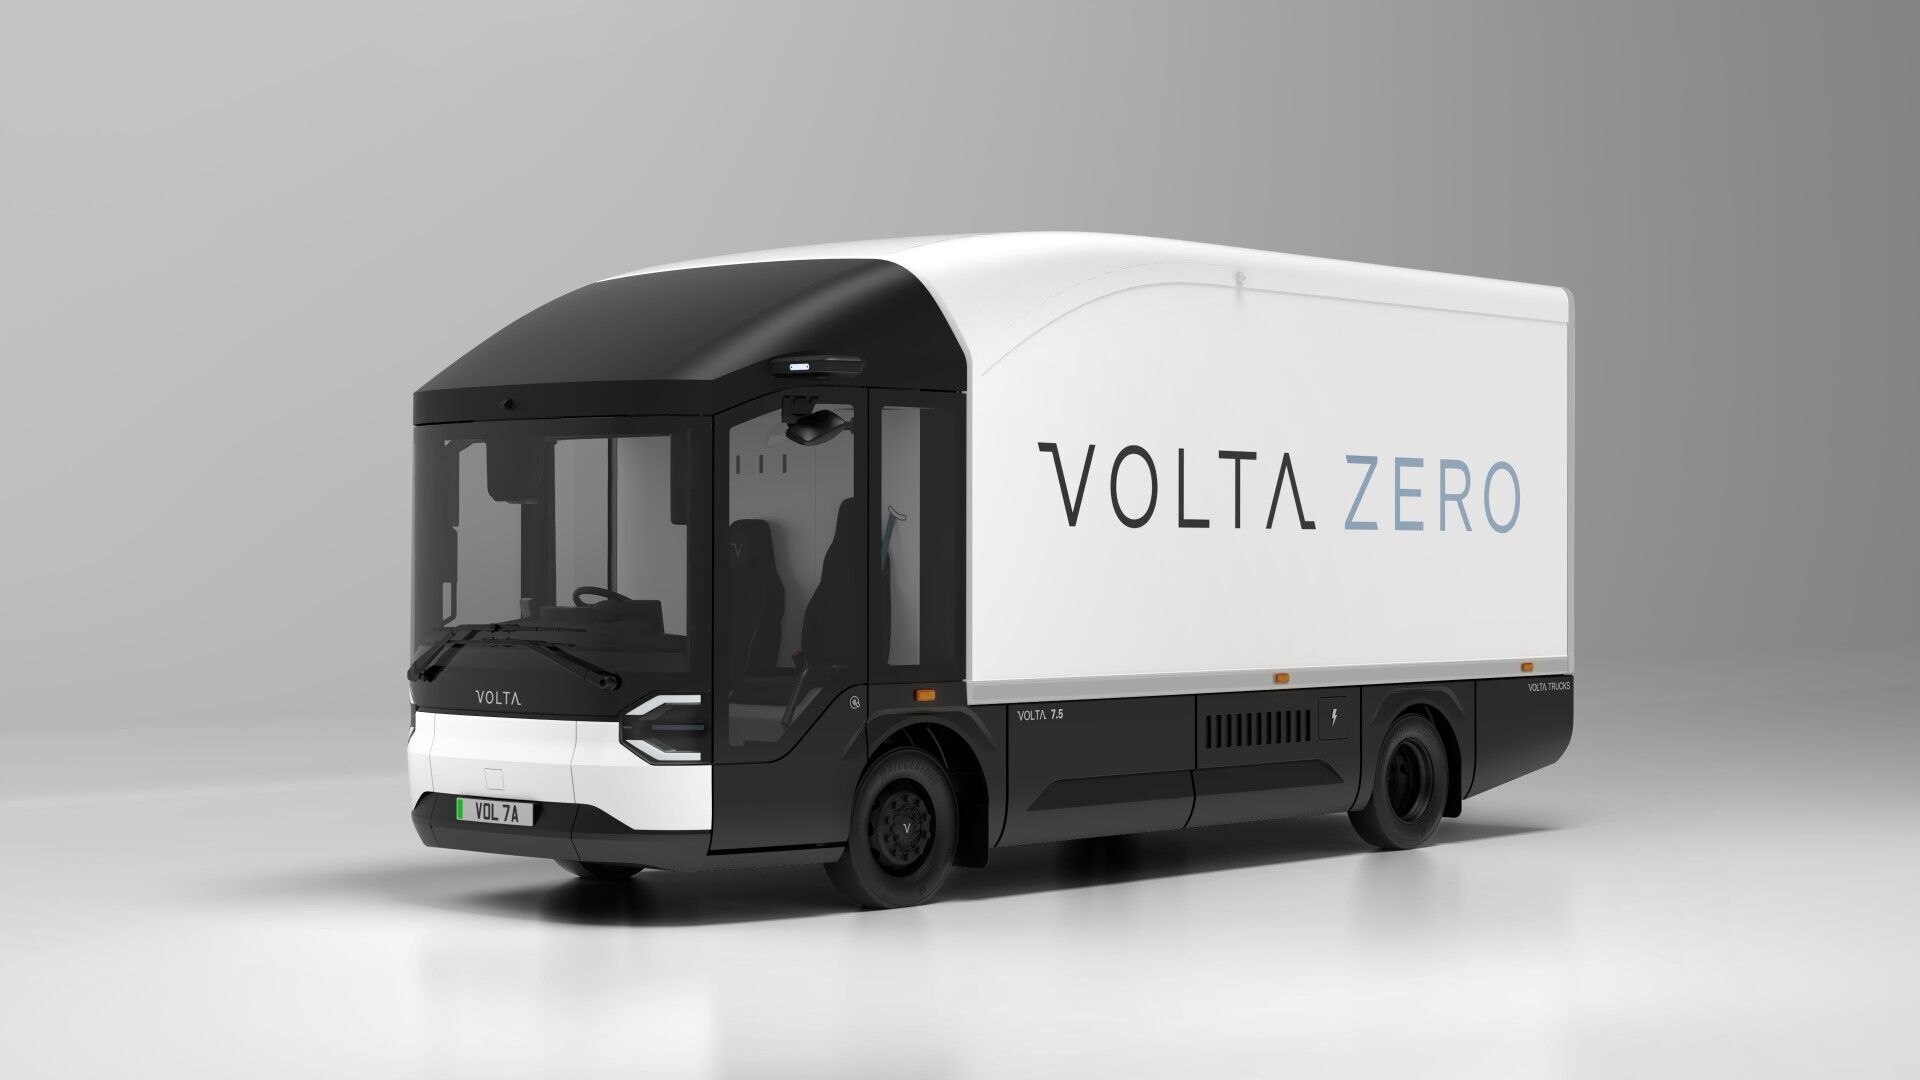 Новые версии Volta Zero имеют укороченное шасси, уменьшенные свесы, а также обтекатель на крыше, помогающий улучшить аэродинамику.